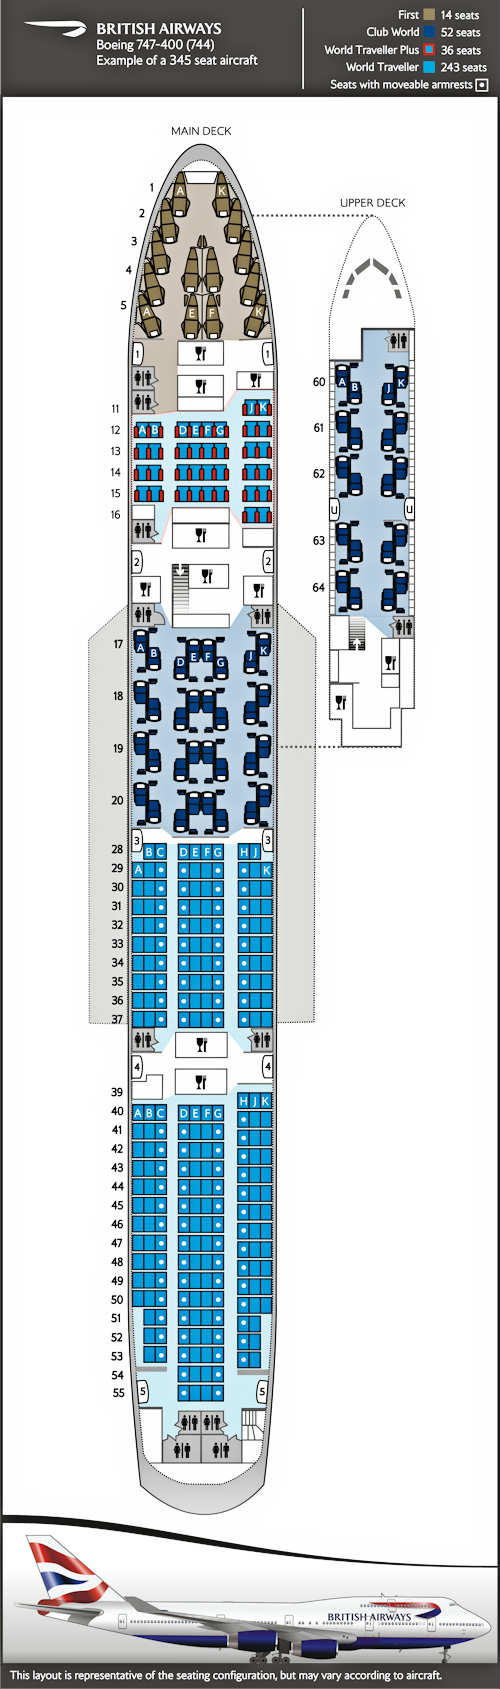 Mapa de asientos del Boeing 747-400: 345 asientos distribuidos en 4 clases.